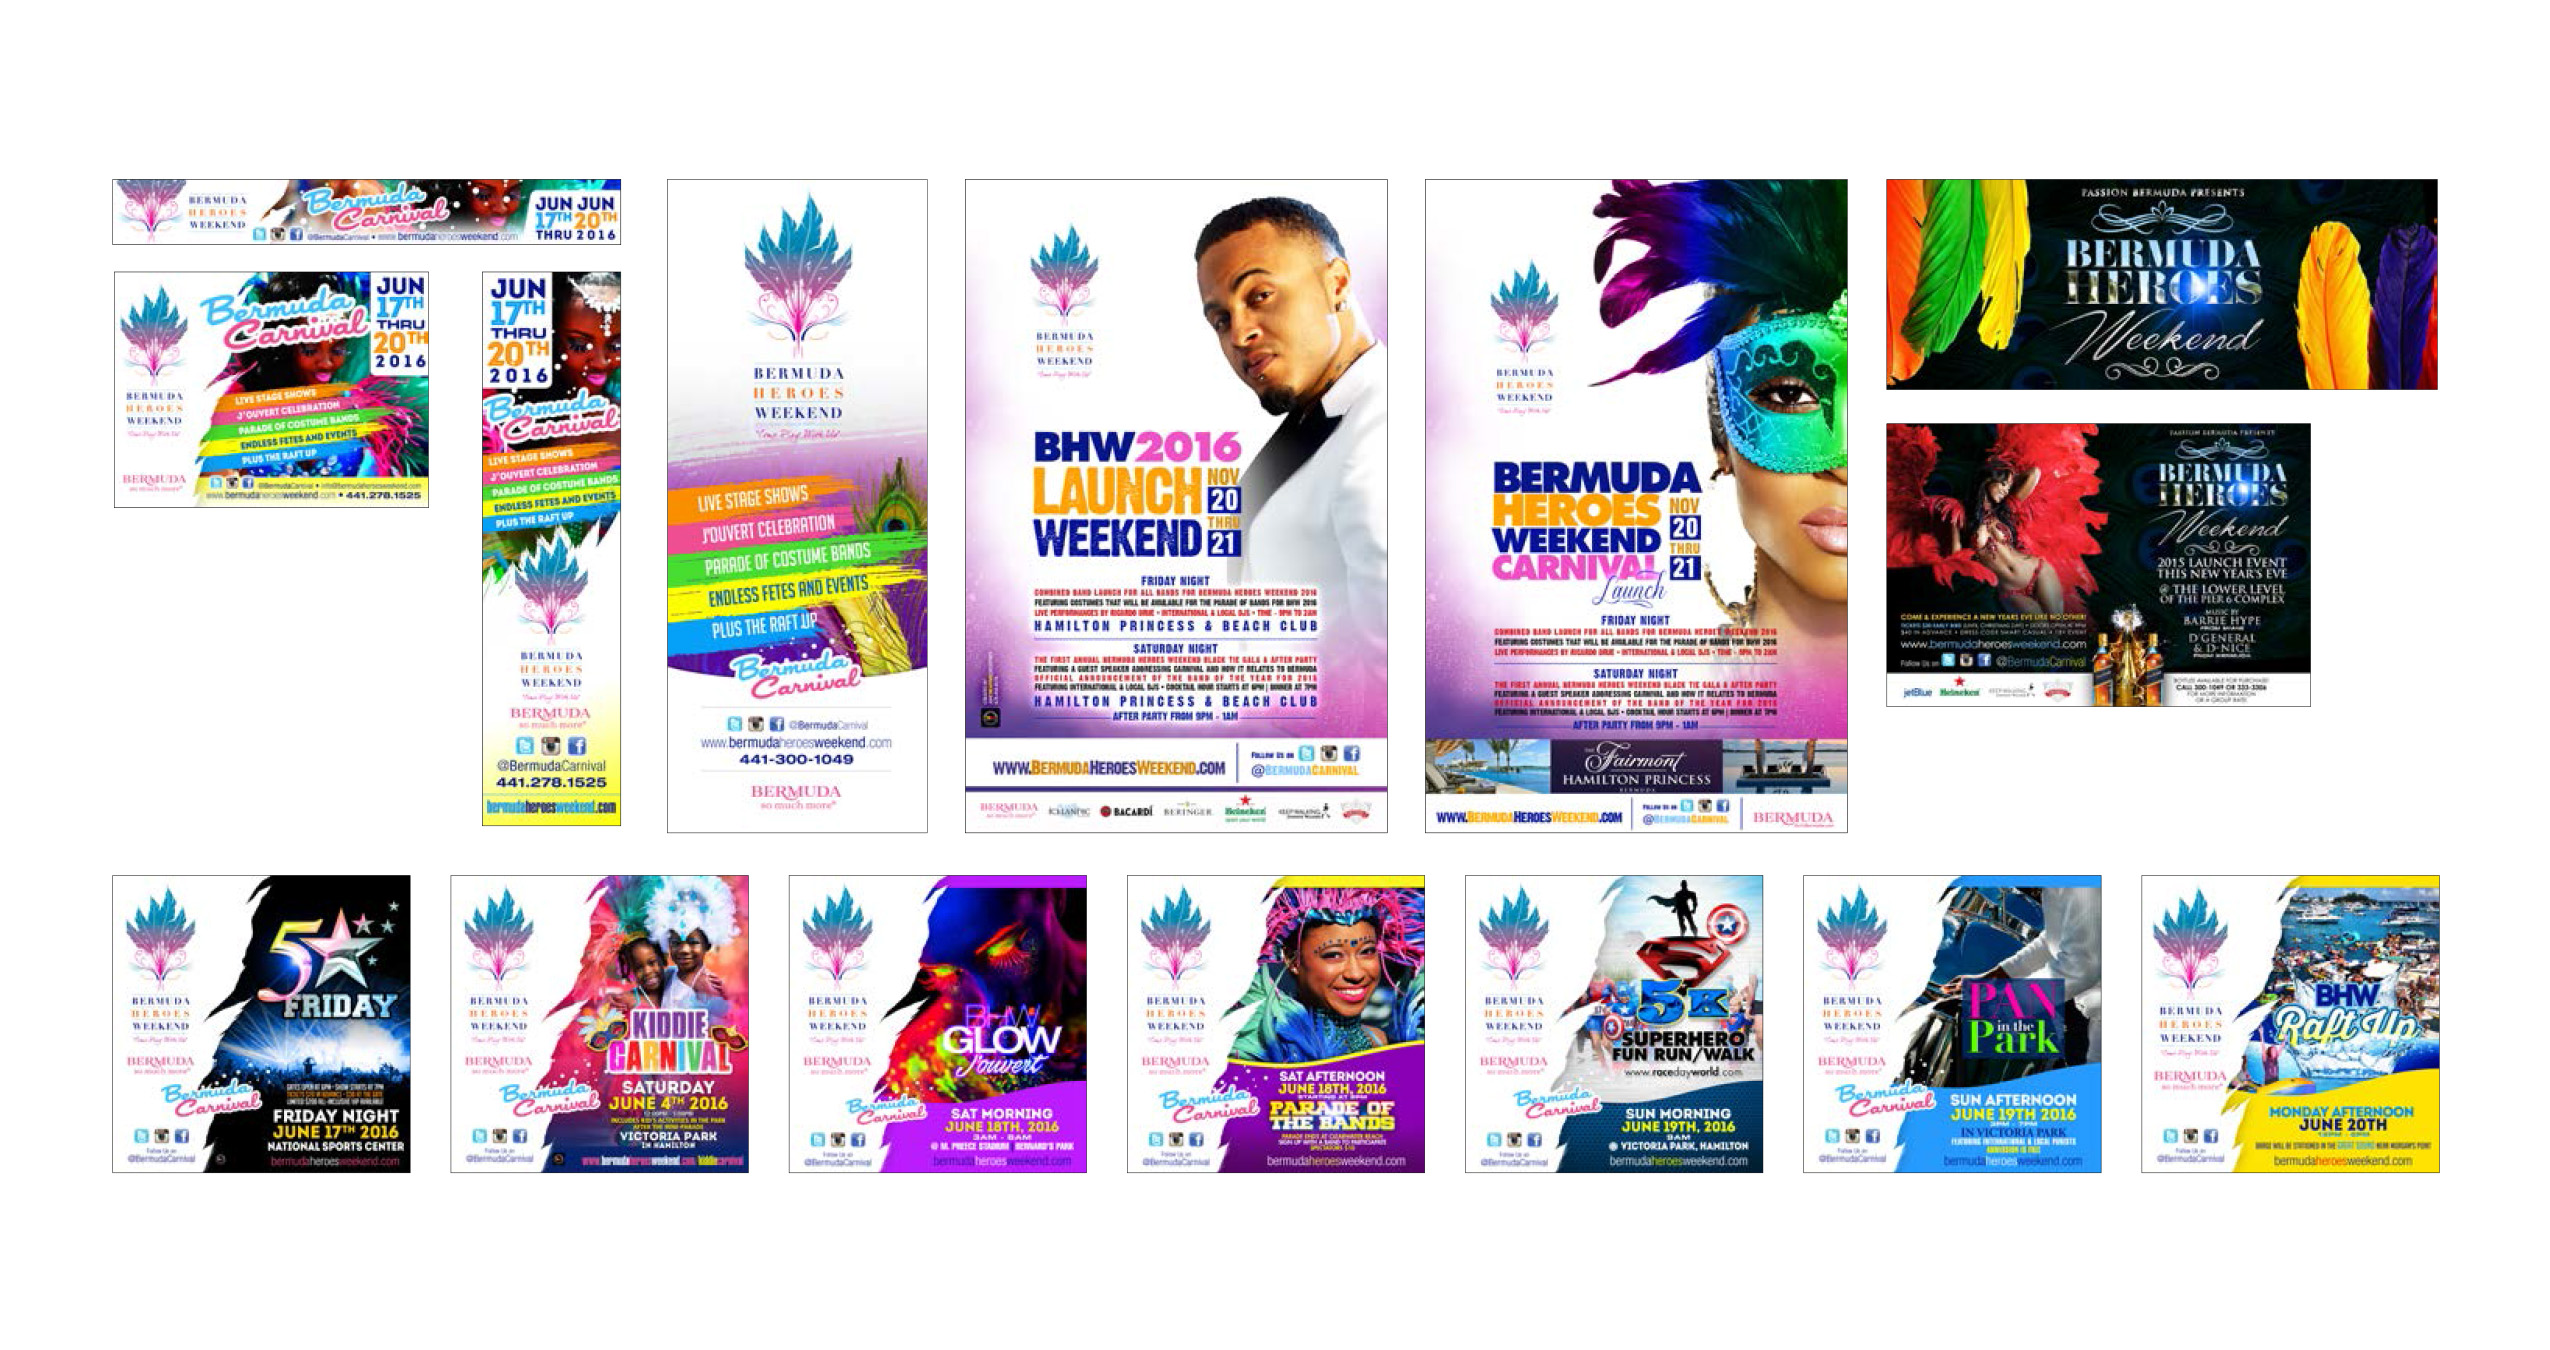 Bermuda Heroes Weekend | Bermuda Carnival